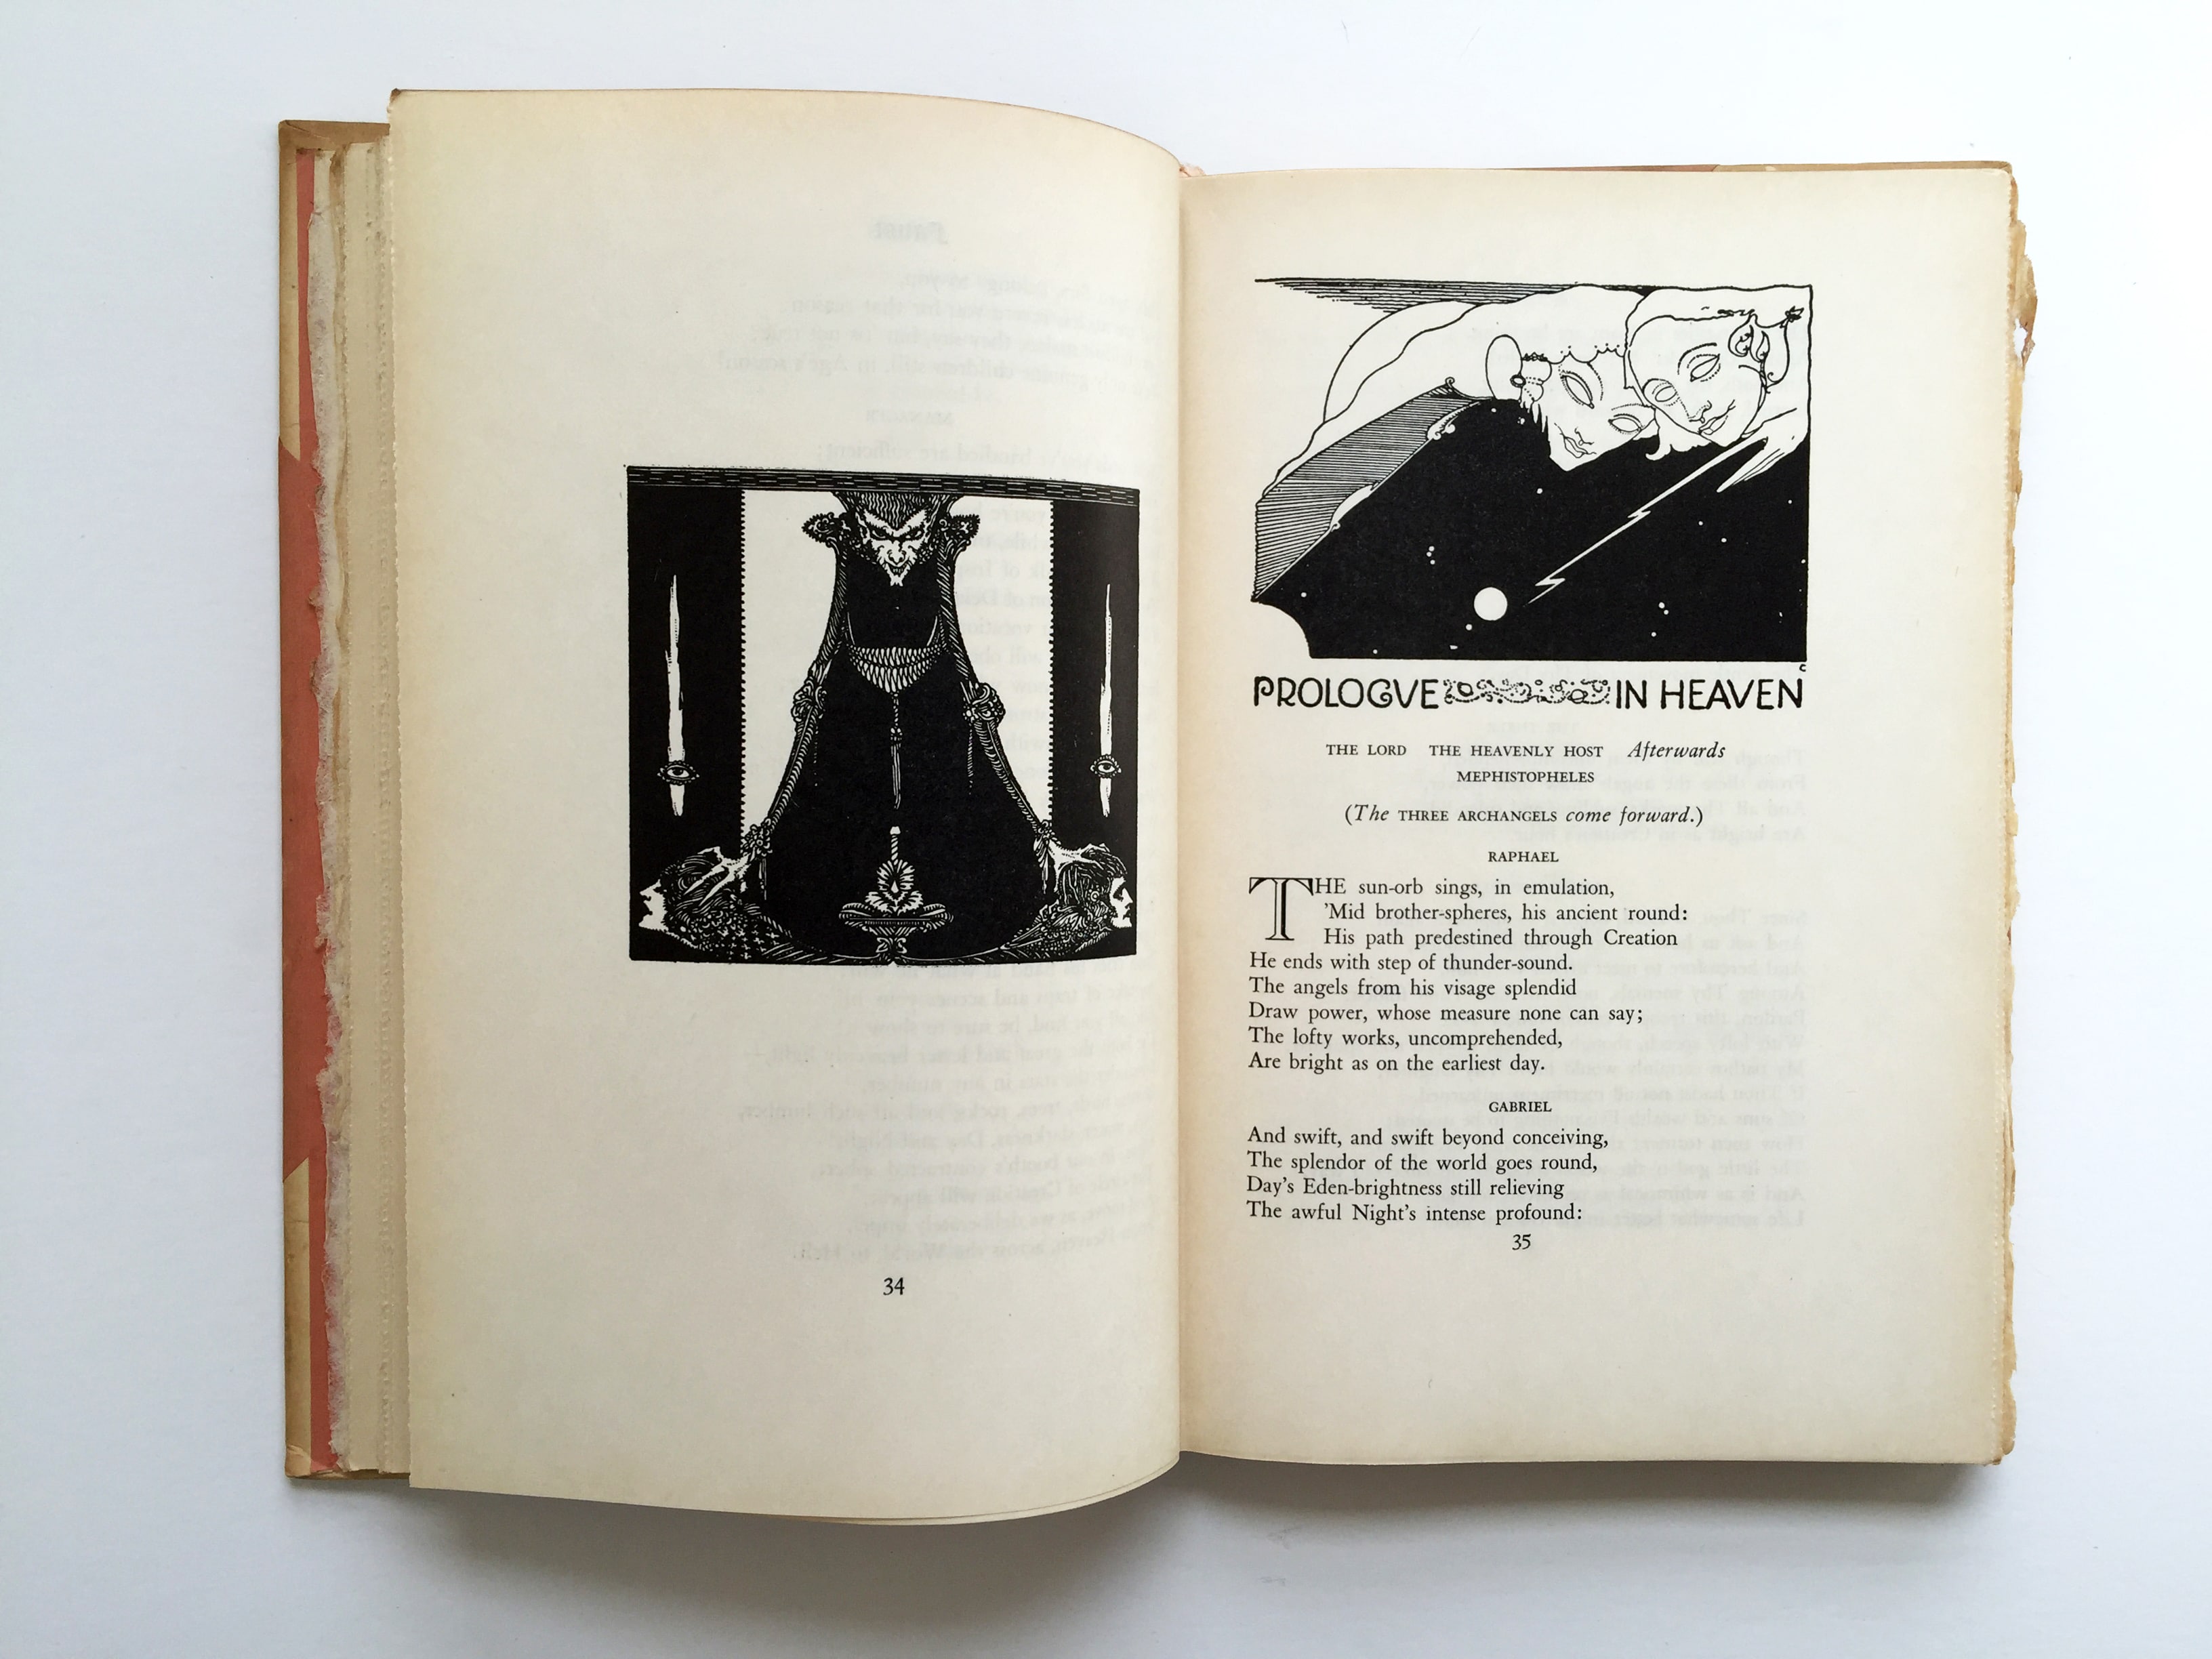 Faust by Johann Wolfgang von Goethe, Harry Clarke